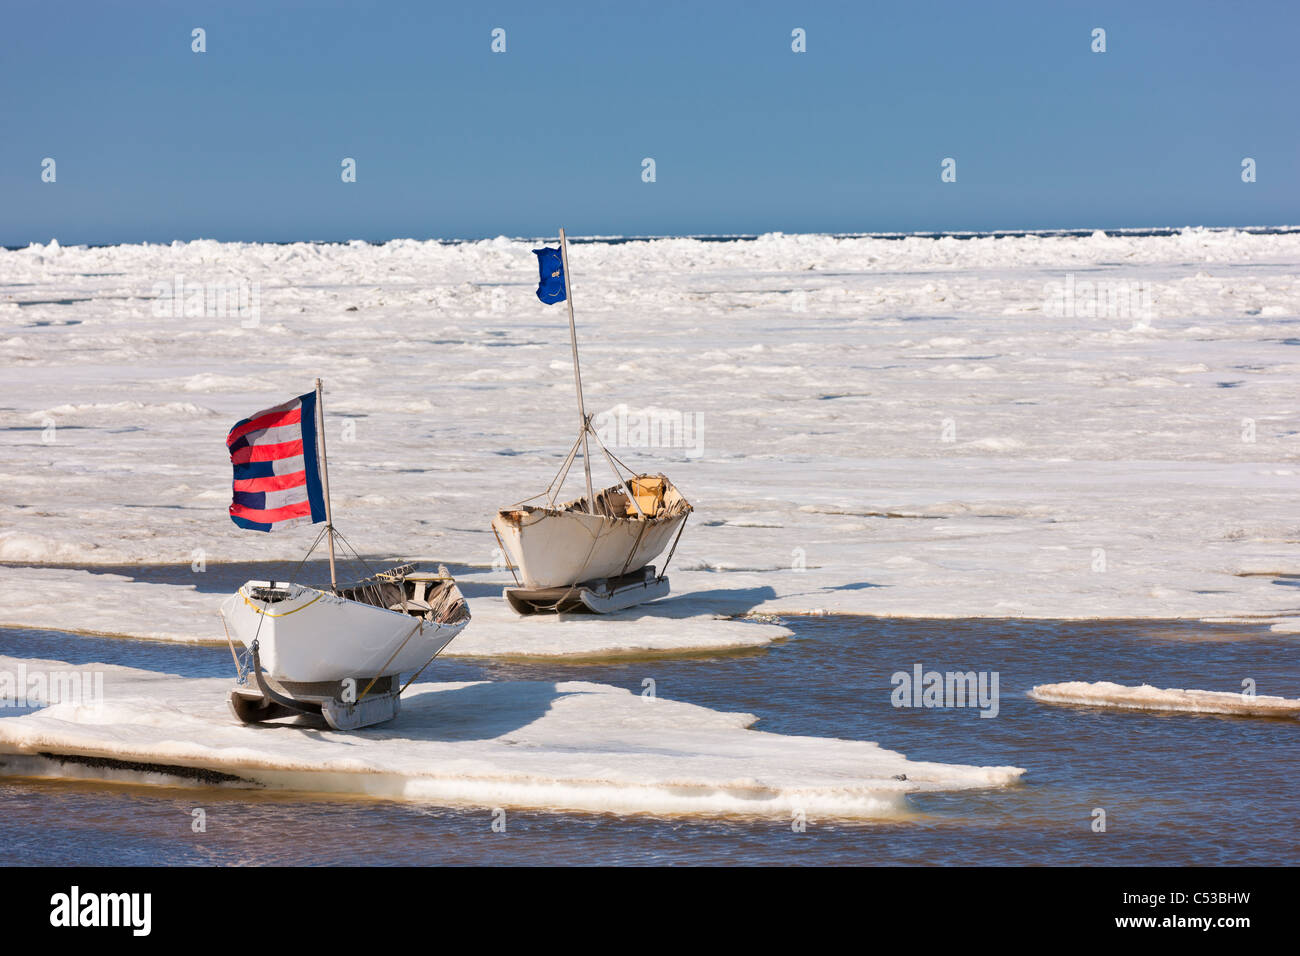 Esquimau Inupiak deux bateaux de la peau (Umiaqs)sur la glace ont soulevé les drapeaux dans le cadre de l'Apugauti, célébration de la mer de Chukchi, Barrow, Alaska Banque D'Images